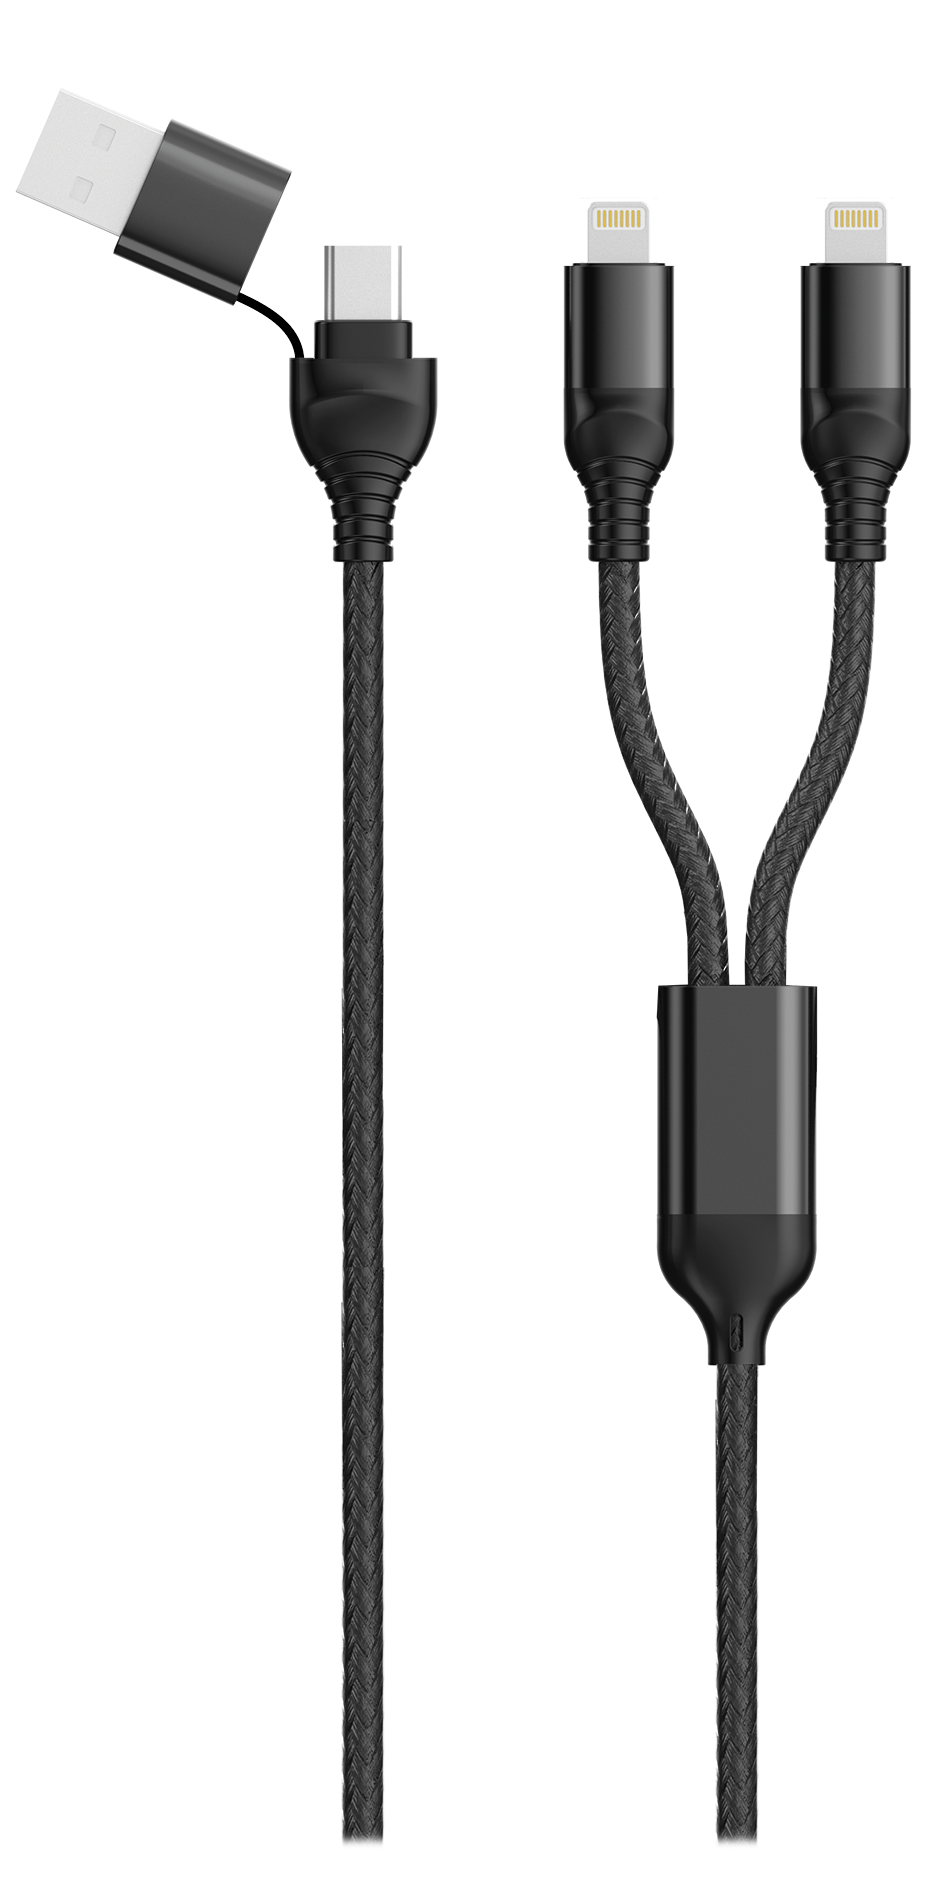 Bild von Duo USB / Type C Ladekabel Lightning schwarz 120cm